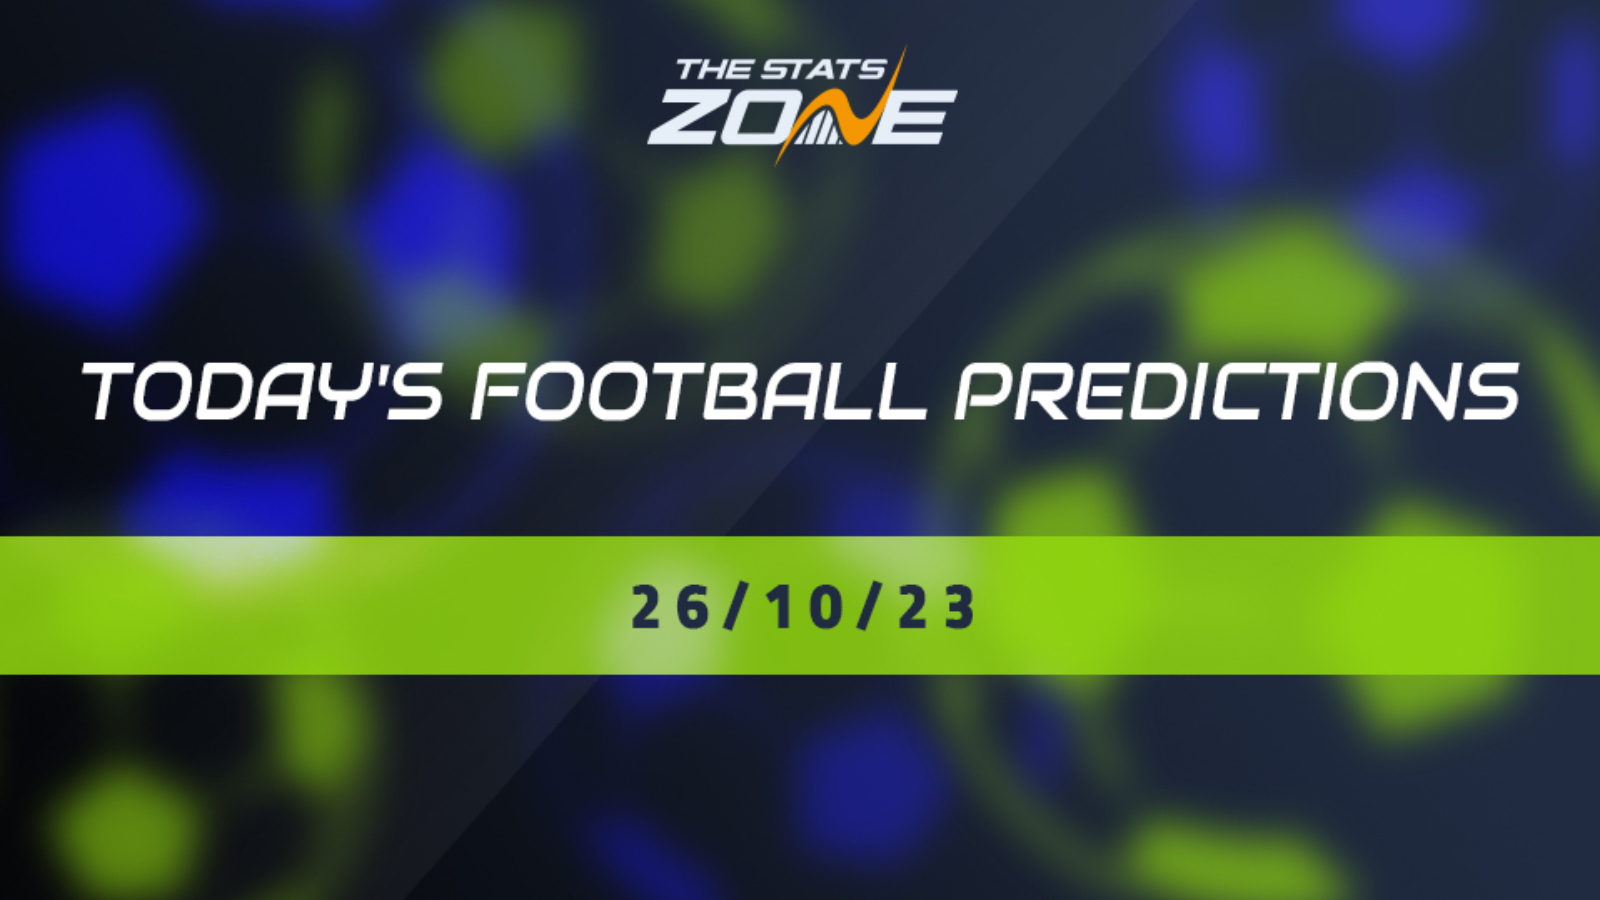 Roma vs Slavia Prague Prediction and Picks today 26 October 2023